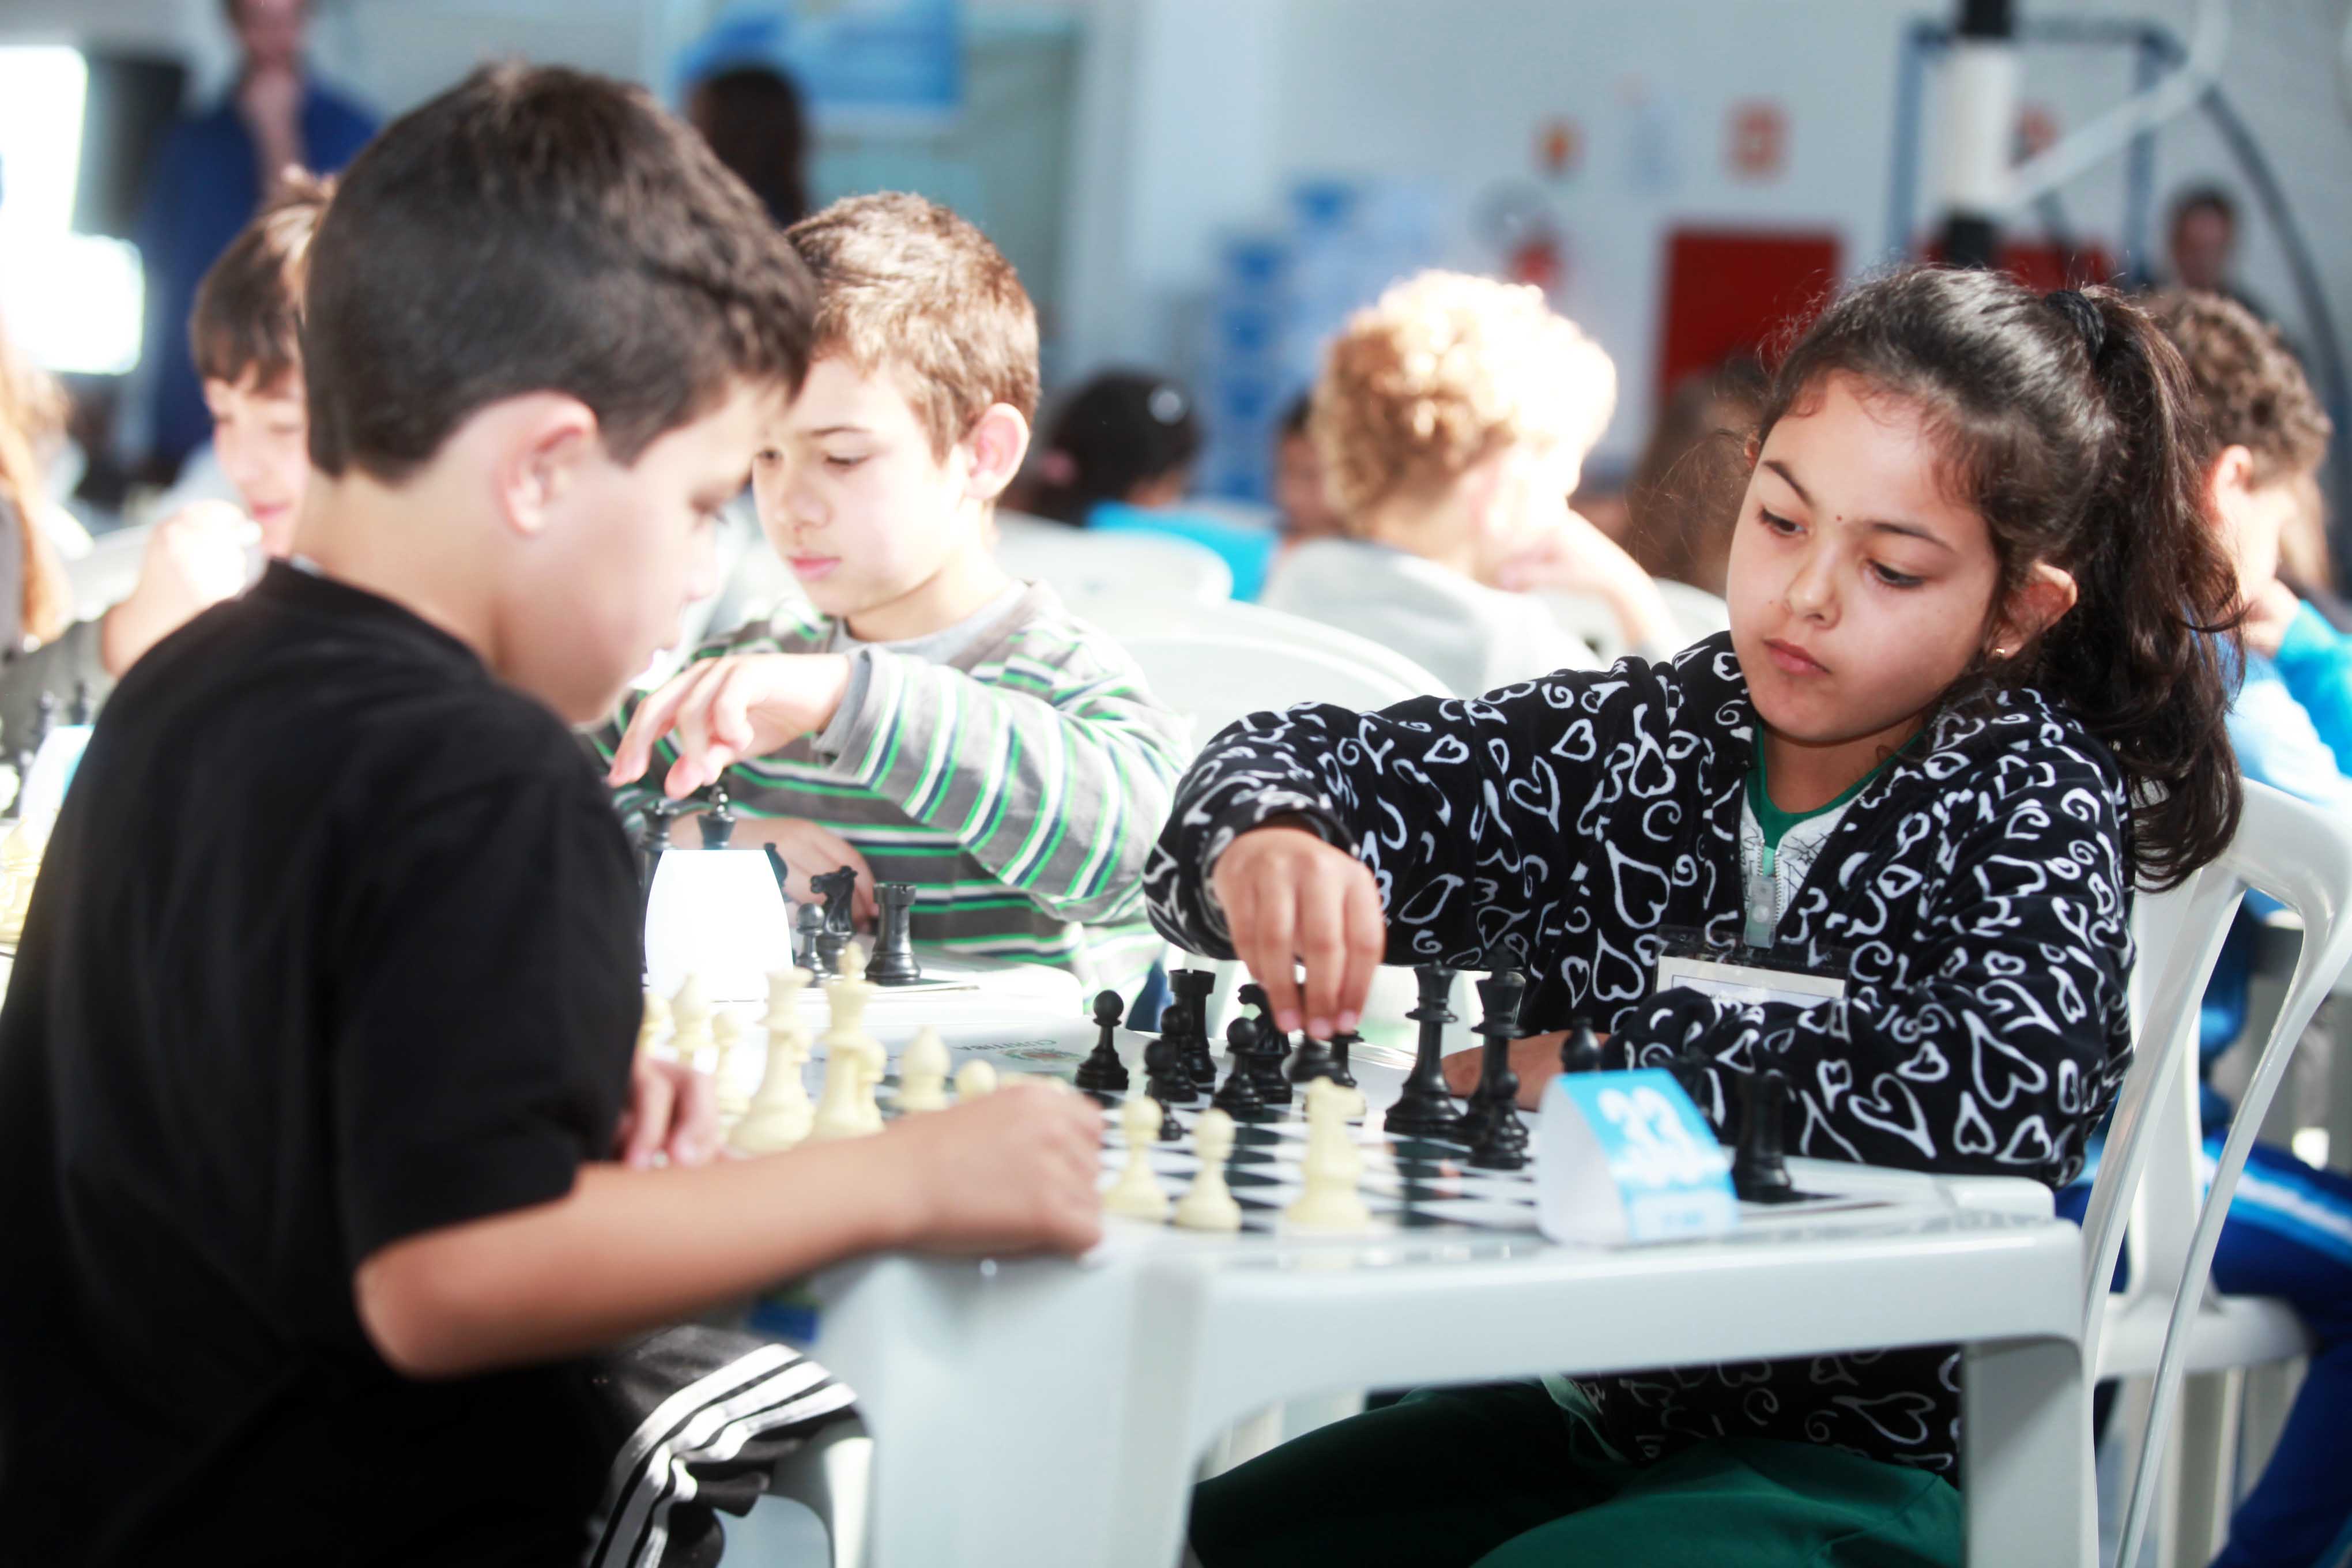 Xadrez: Paranaense de reúne grandes nomes da modalidade